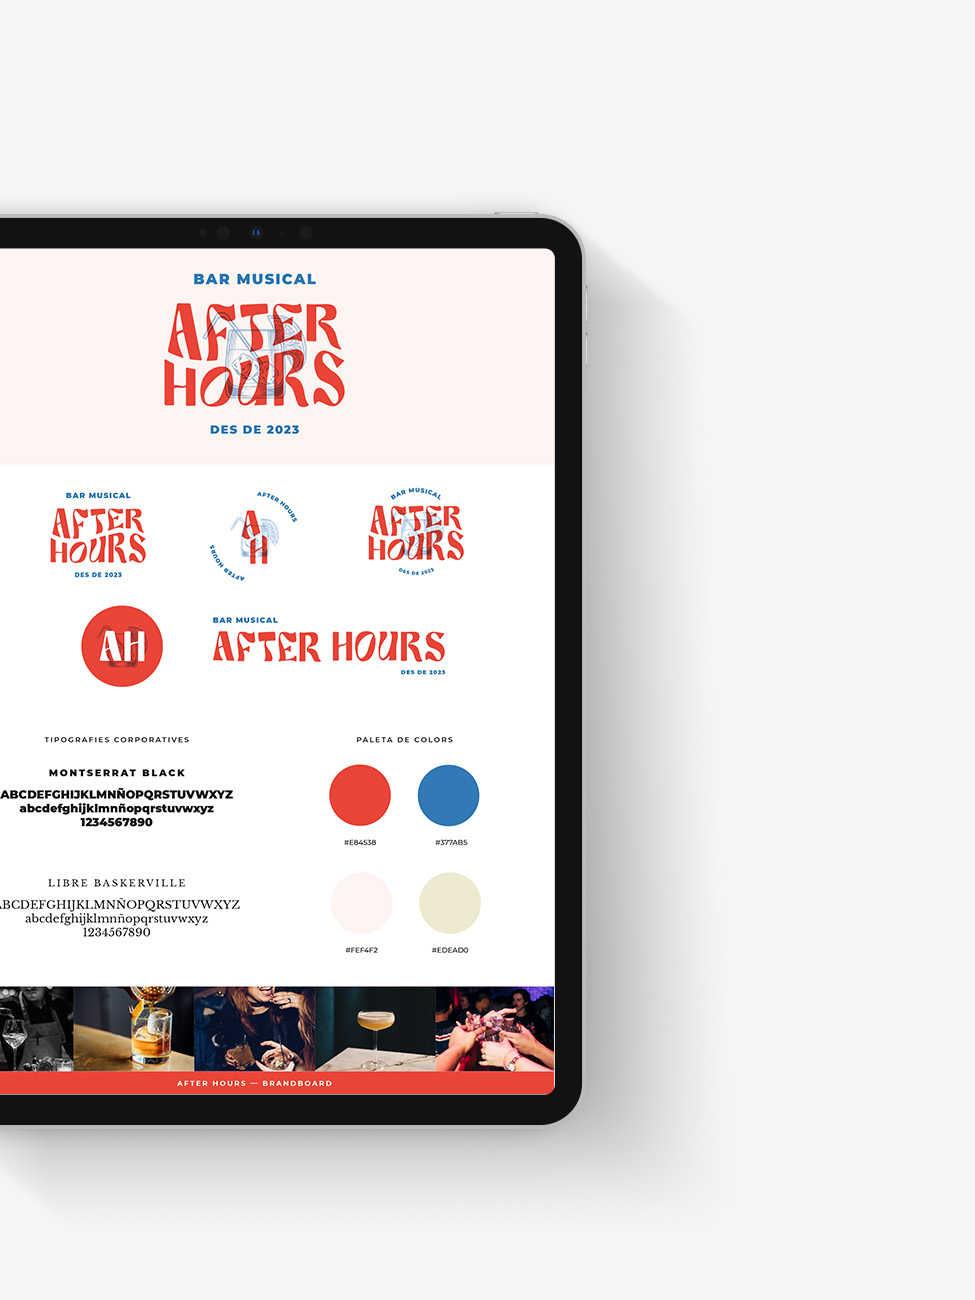 iPad amb el brandboard d'After Hours, que conté les versions del logo, les tipografies corporatives, els colors i unes imatges